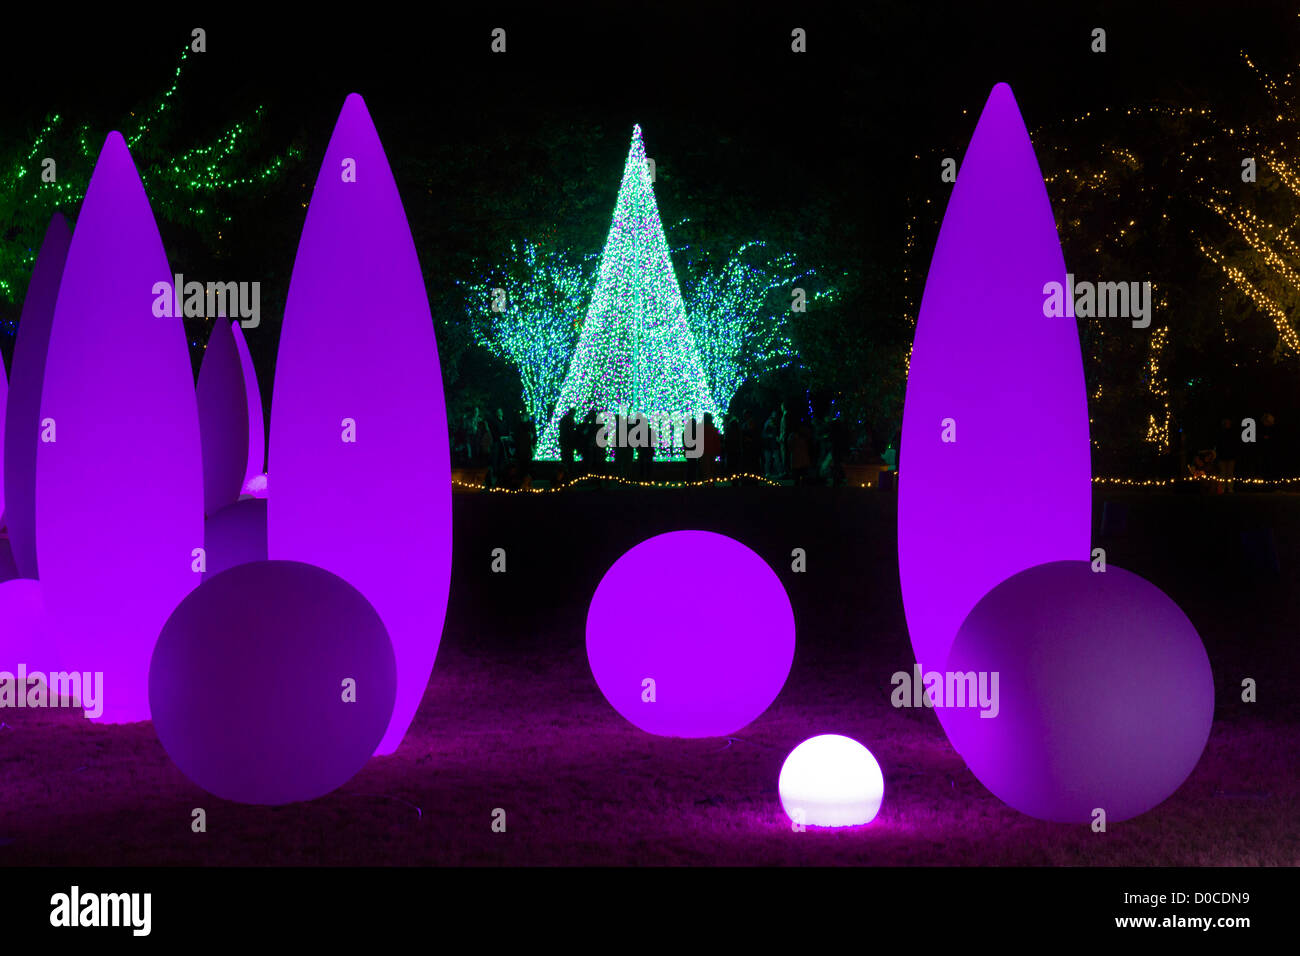 Atlanta Botanischer Garten (Georgia, USA) Urlaub Weihnachtsbeleuchtung am 19. November 2012 ins Leben gerufen. Faszinierende Beleuchtung Dekorationen mit musikalischer Begleitung befinden sich über das Gelände und zieht Tausende von Besuchern. Die Veranstaltung wird bis 5. Januar 2013 fortgesetzt. Stockfoto